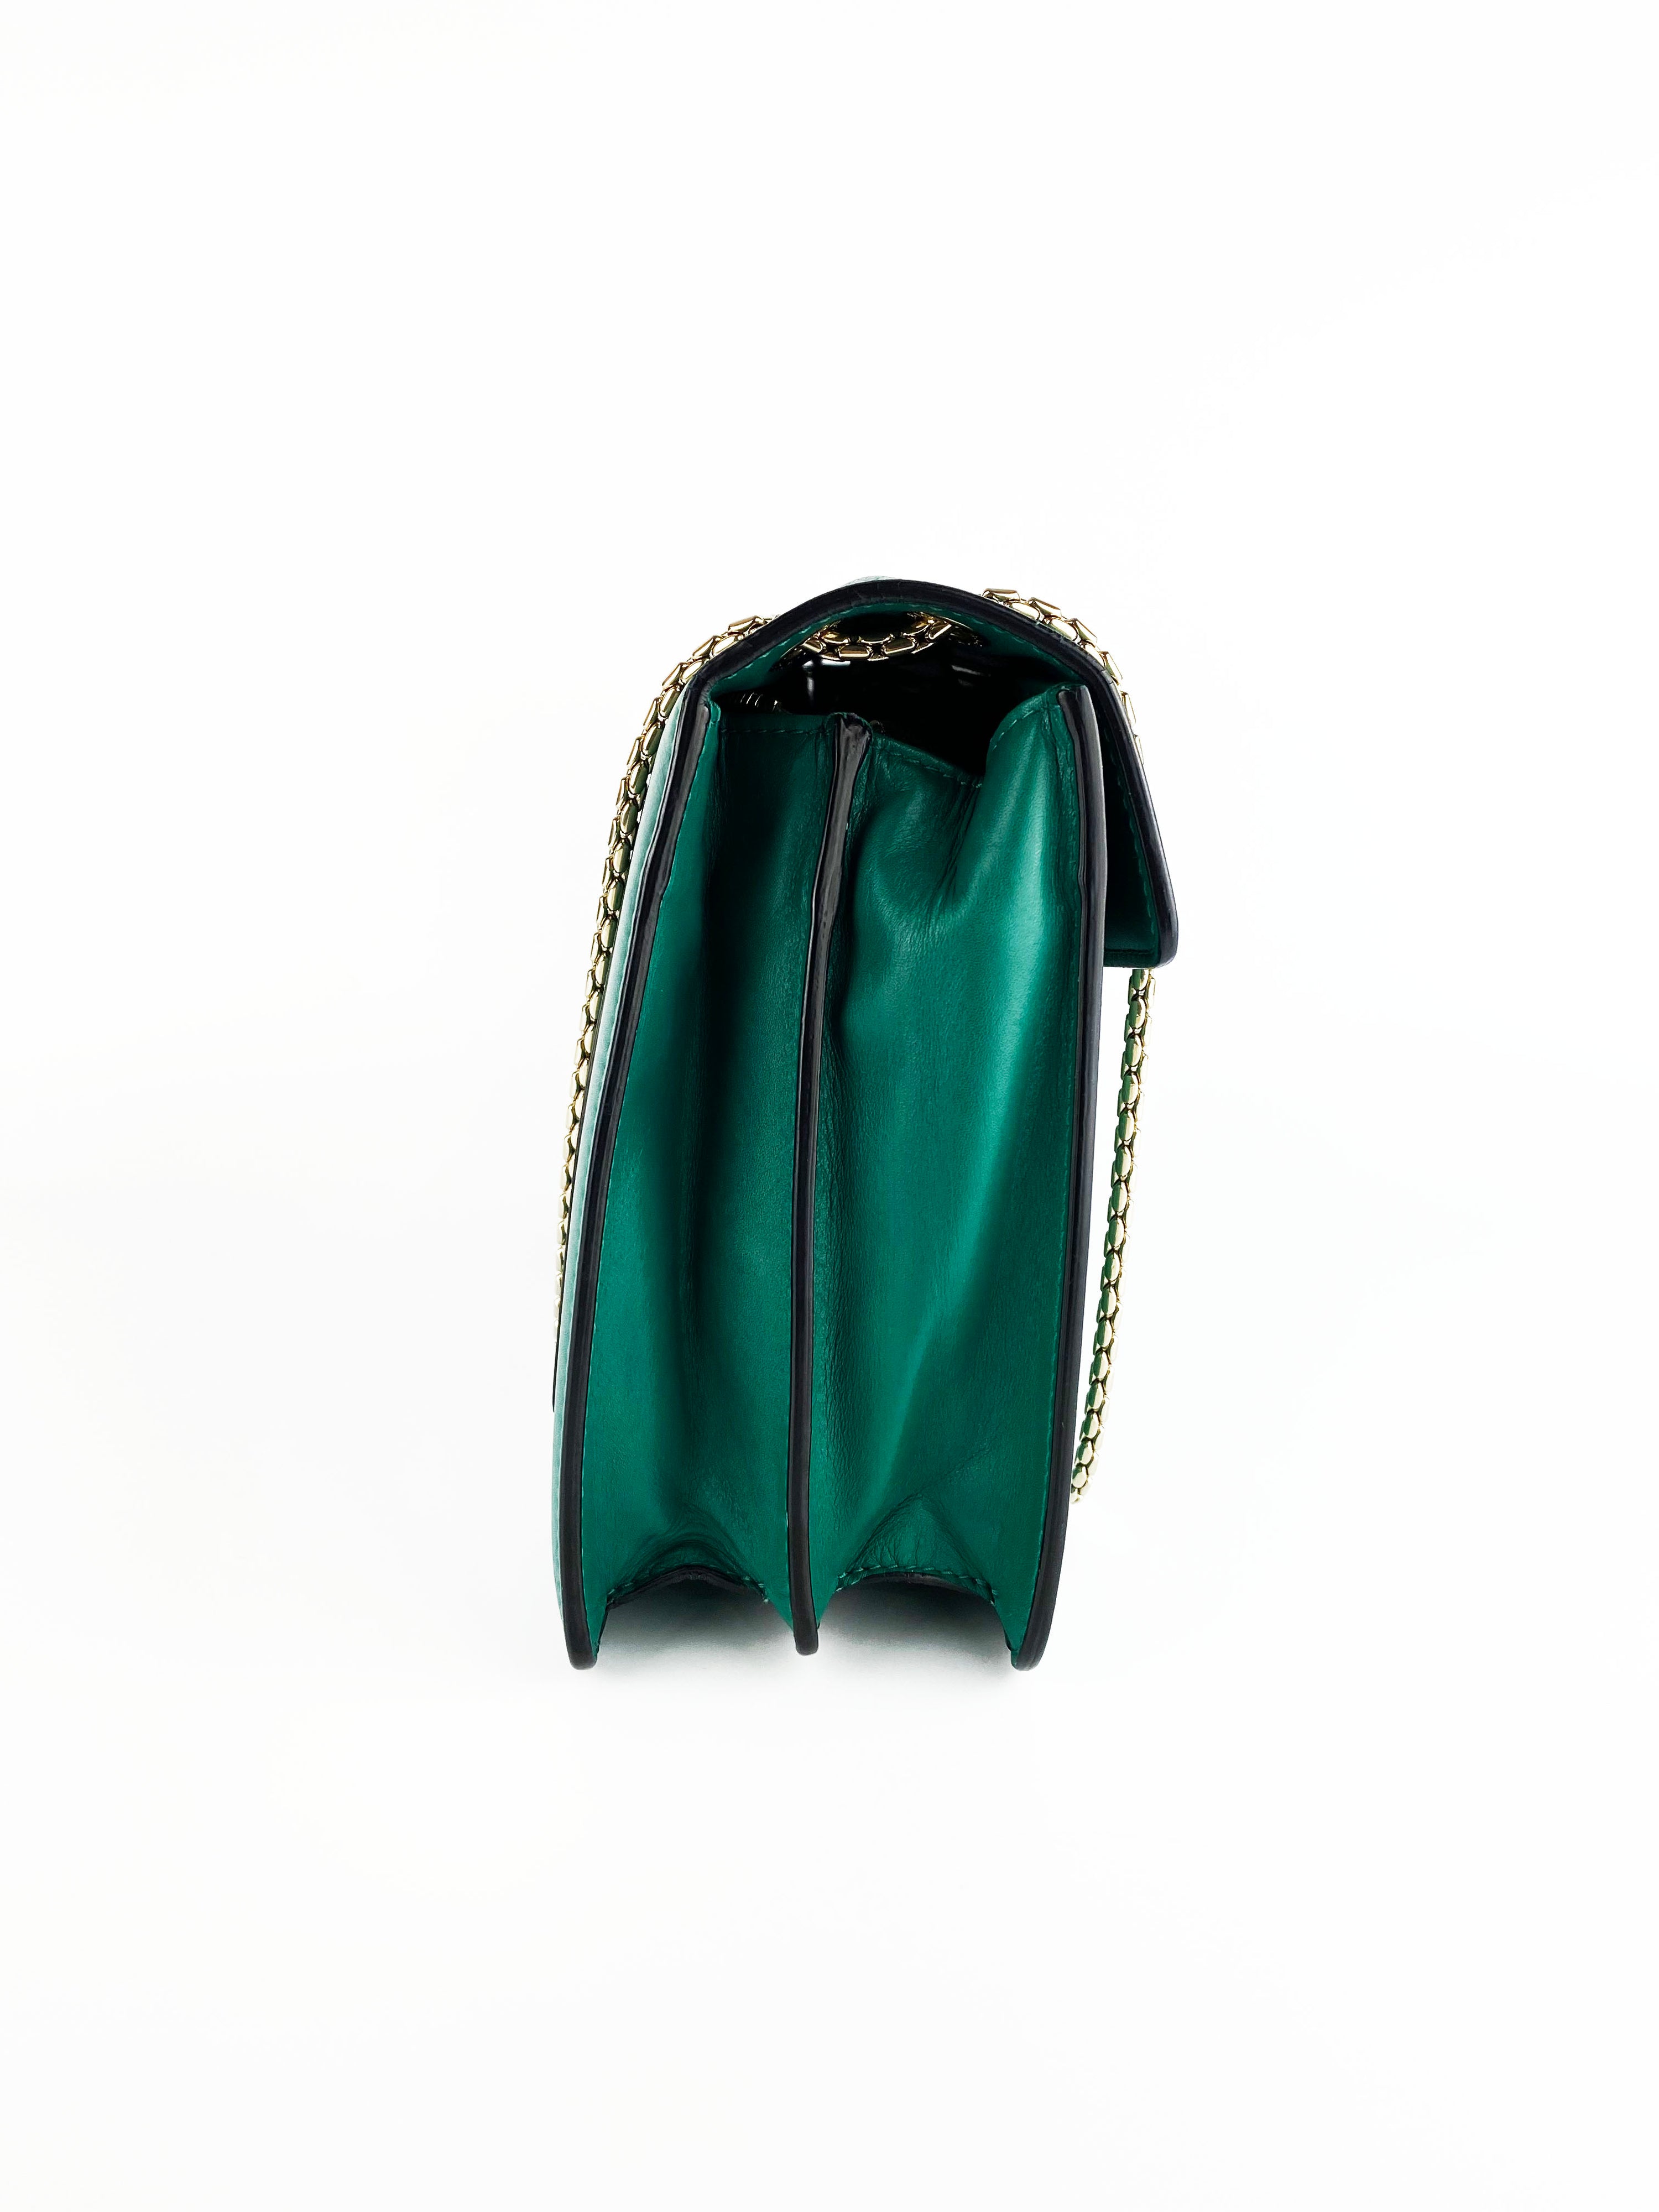 Bvlgari Serpenti Forever Green Shoulder Bag